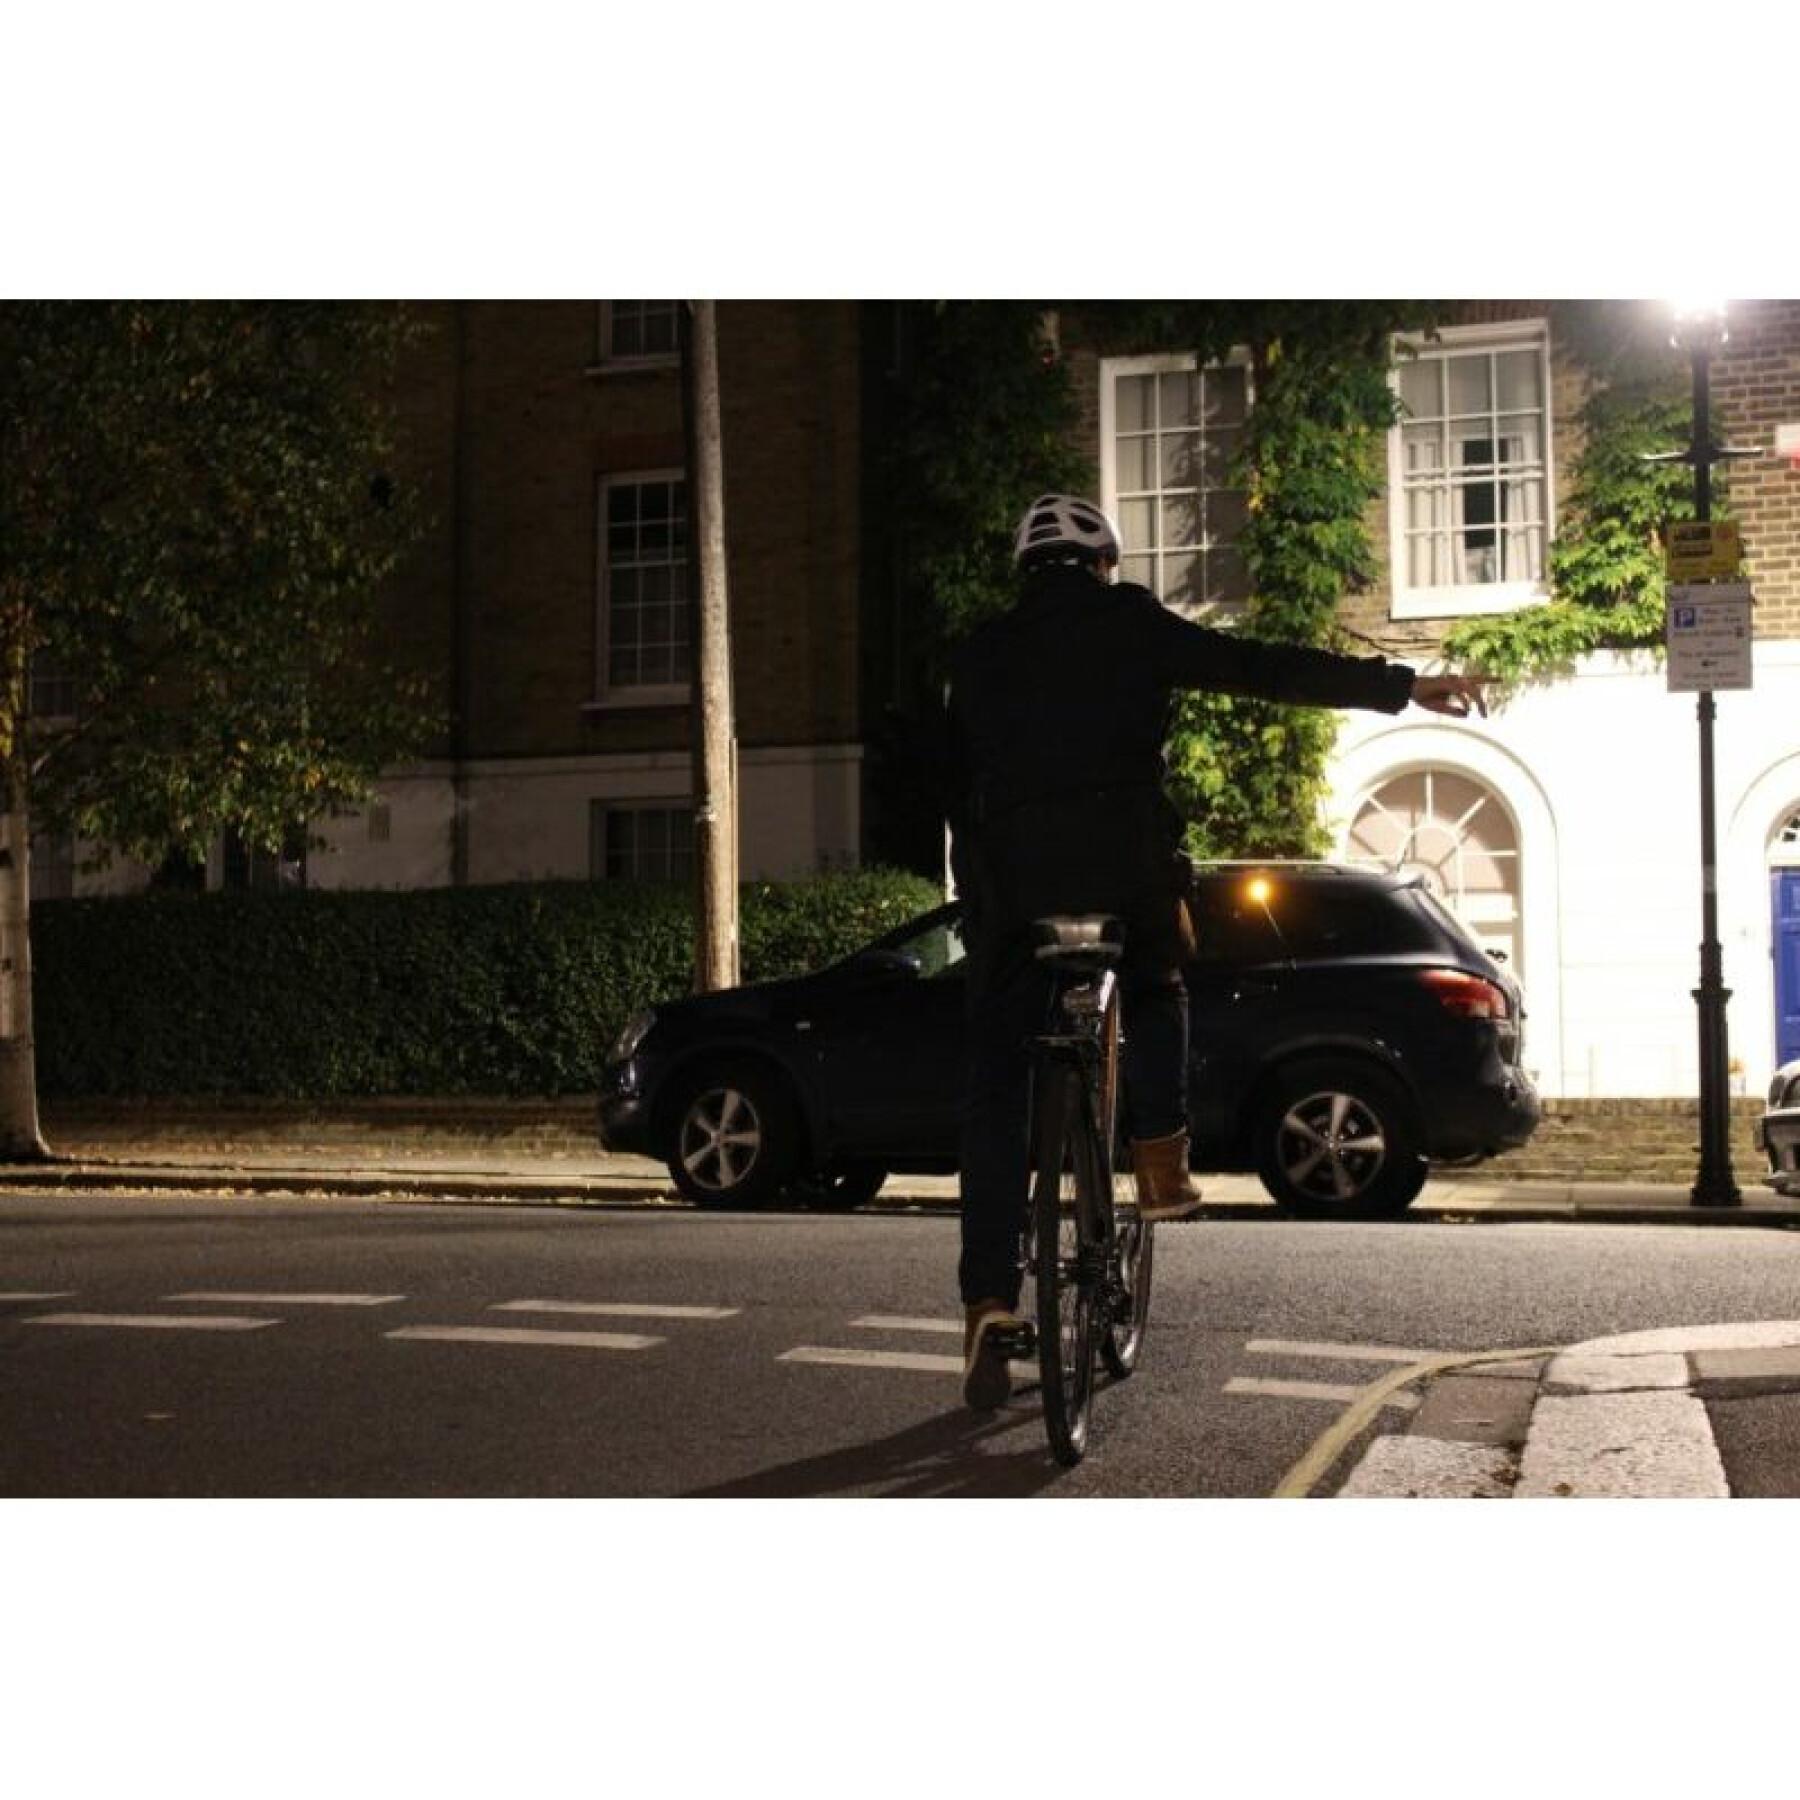 Clignotants fixes design pour vélo-trottinette Cycl winglights pop